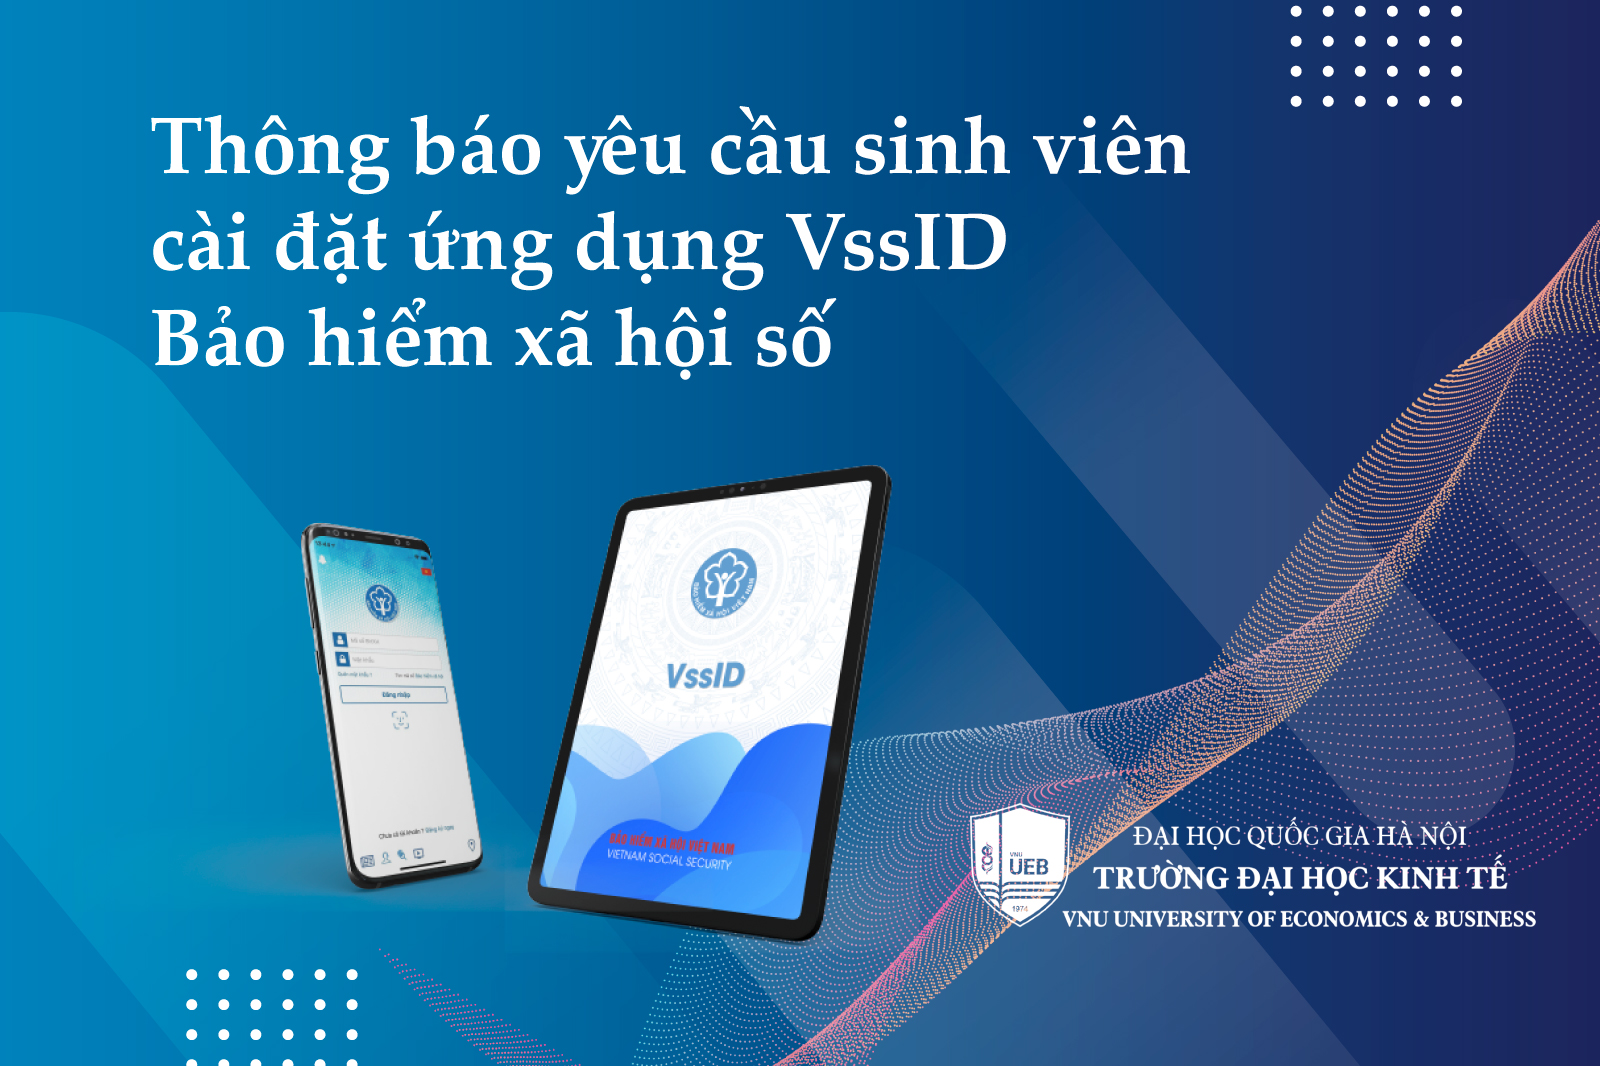 Thông báo yêu cầu sinh viên cài đặt ứng dụng VssID – Bảo hiểm xã hội số